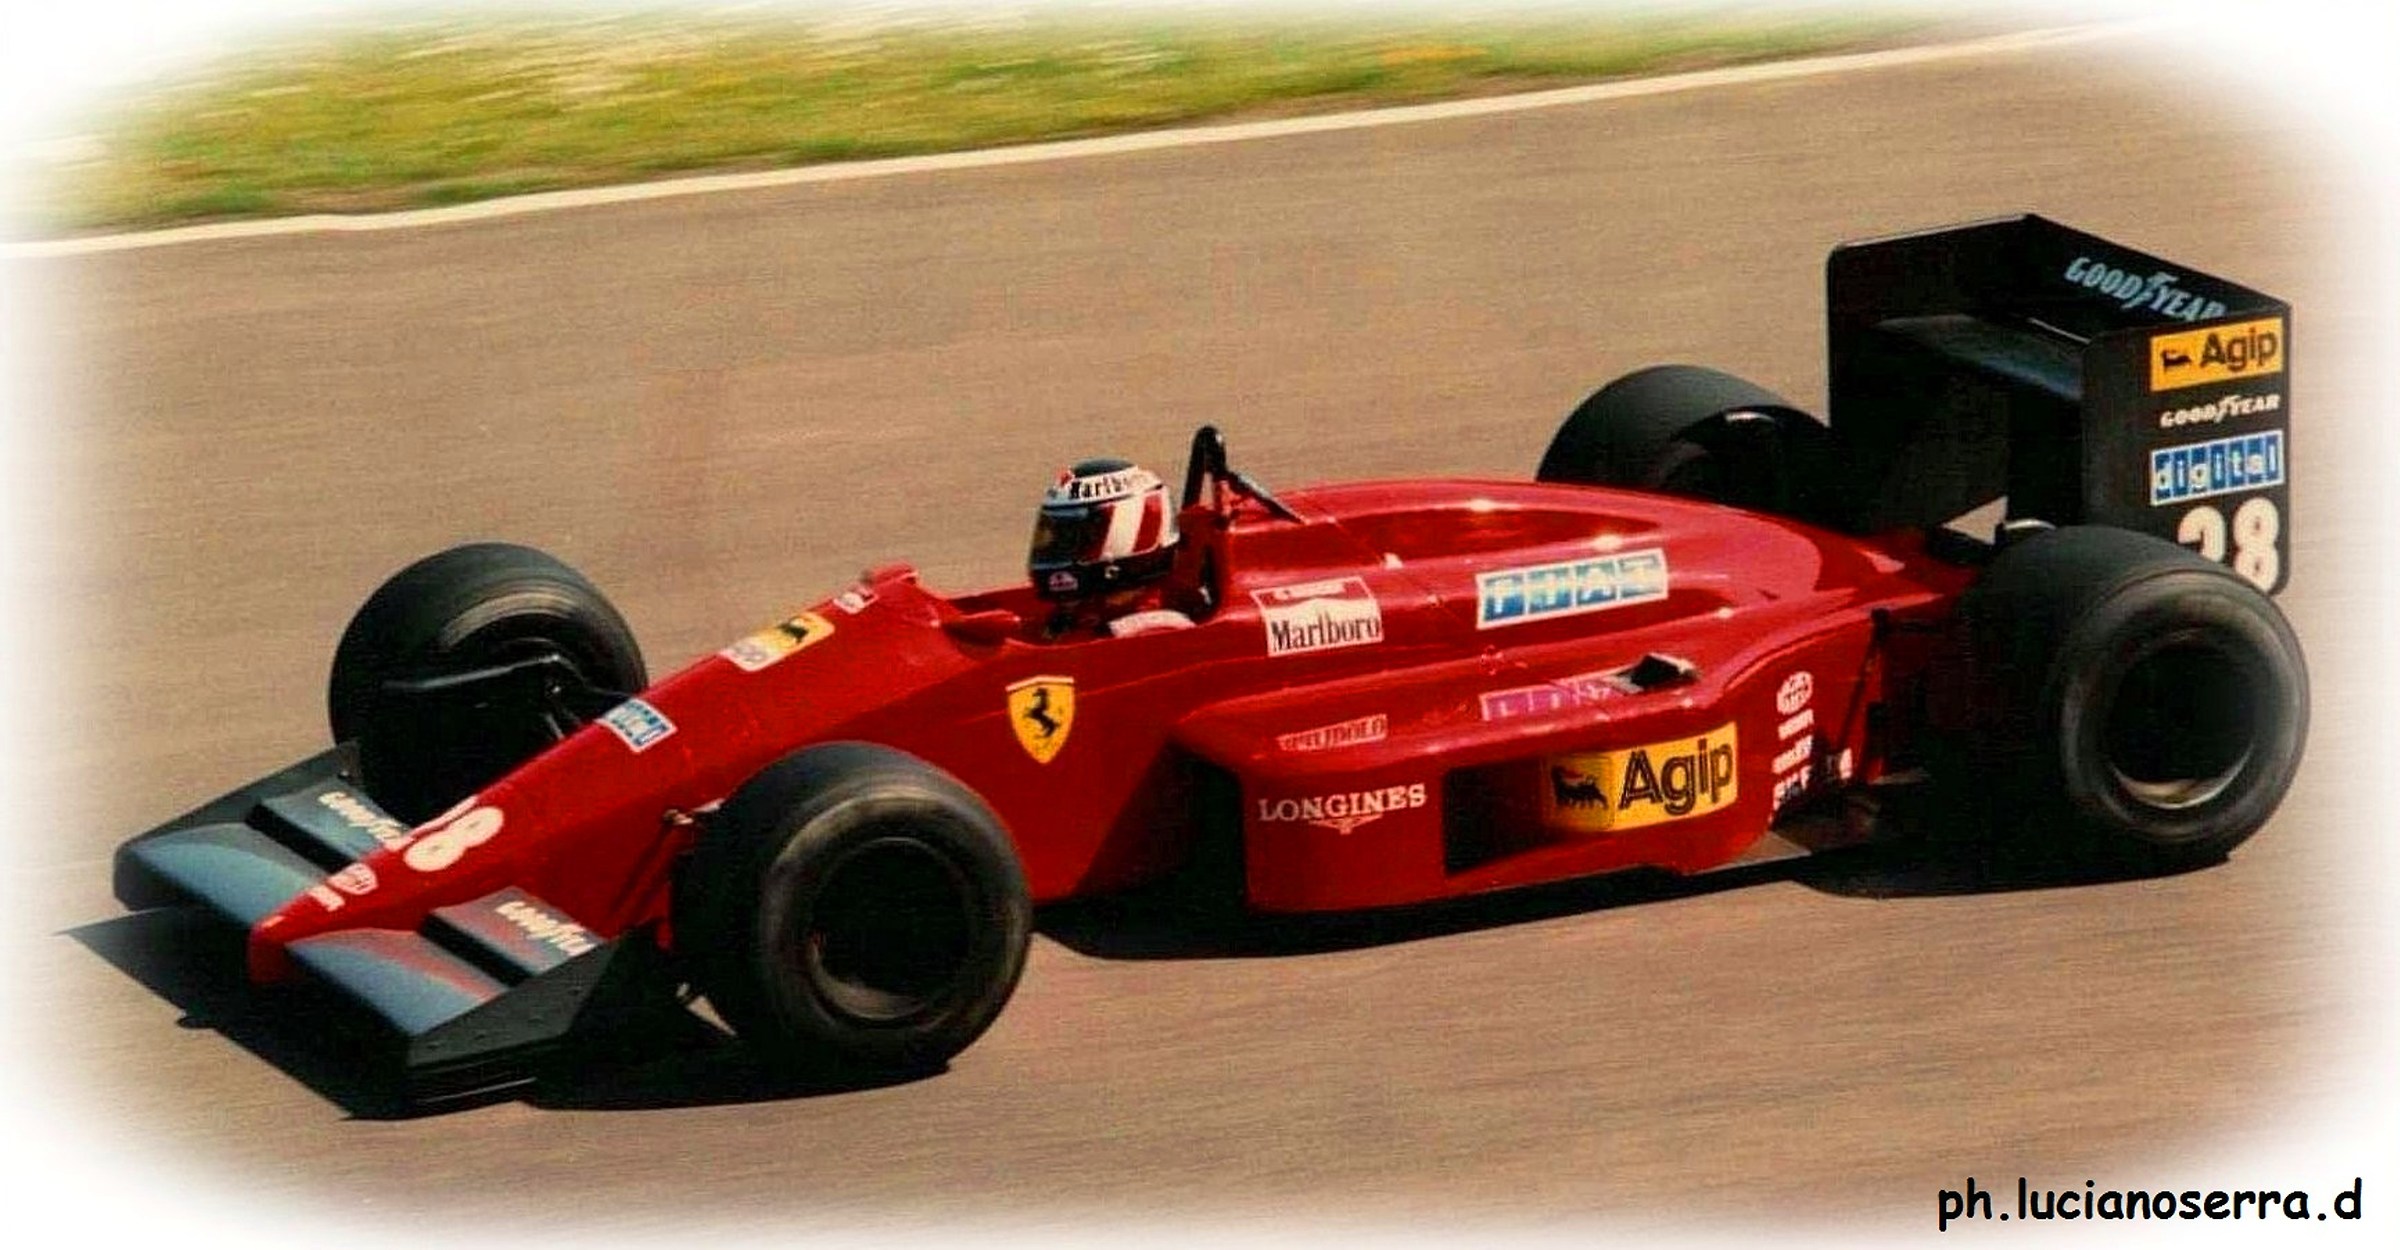 Gerhard Berger on Ferrari...